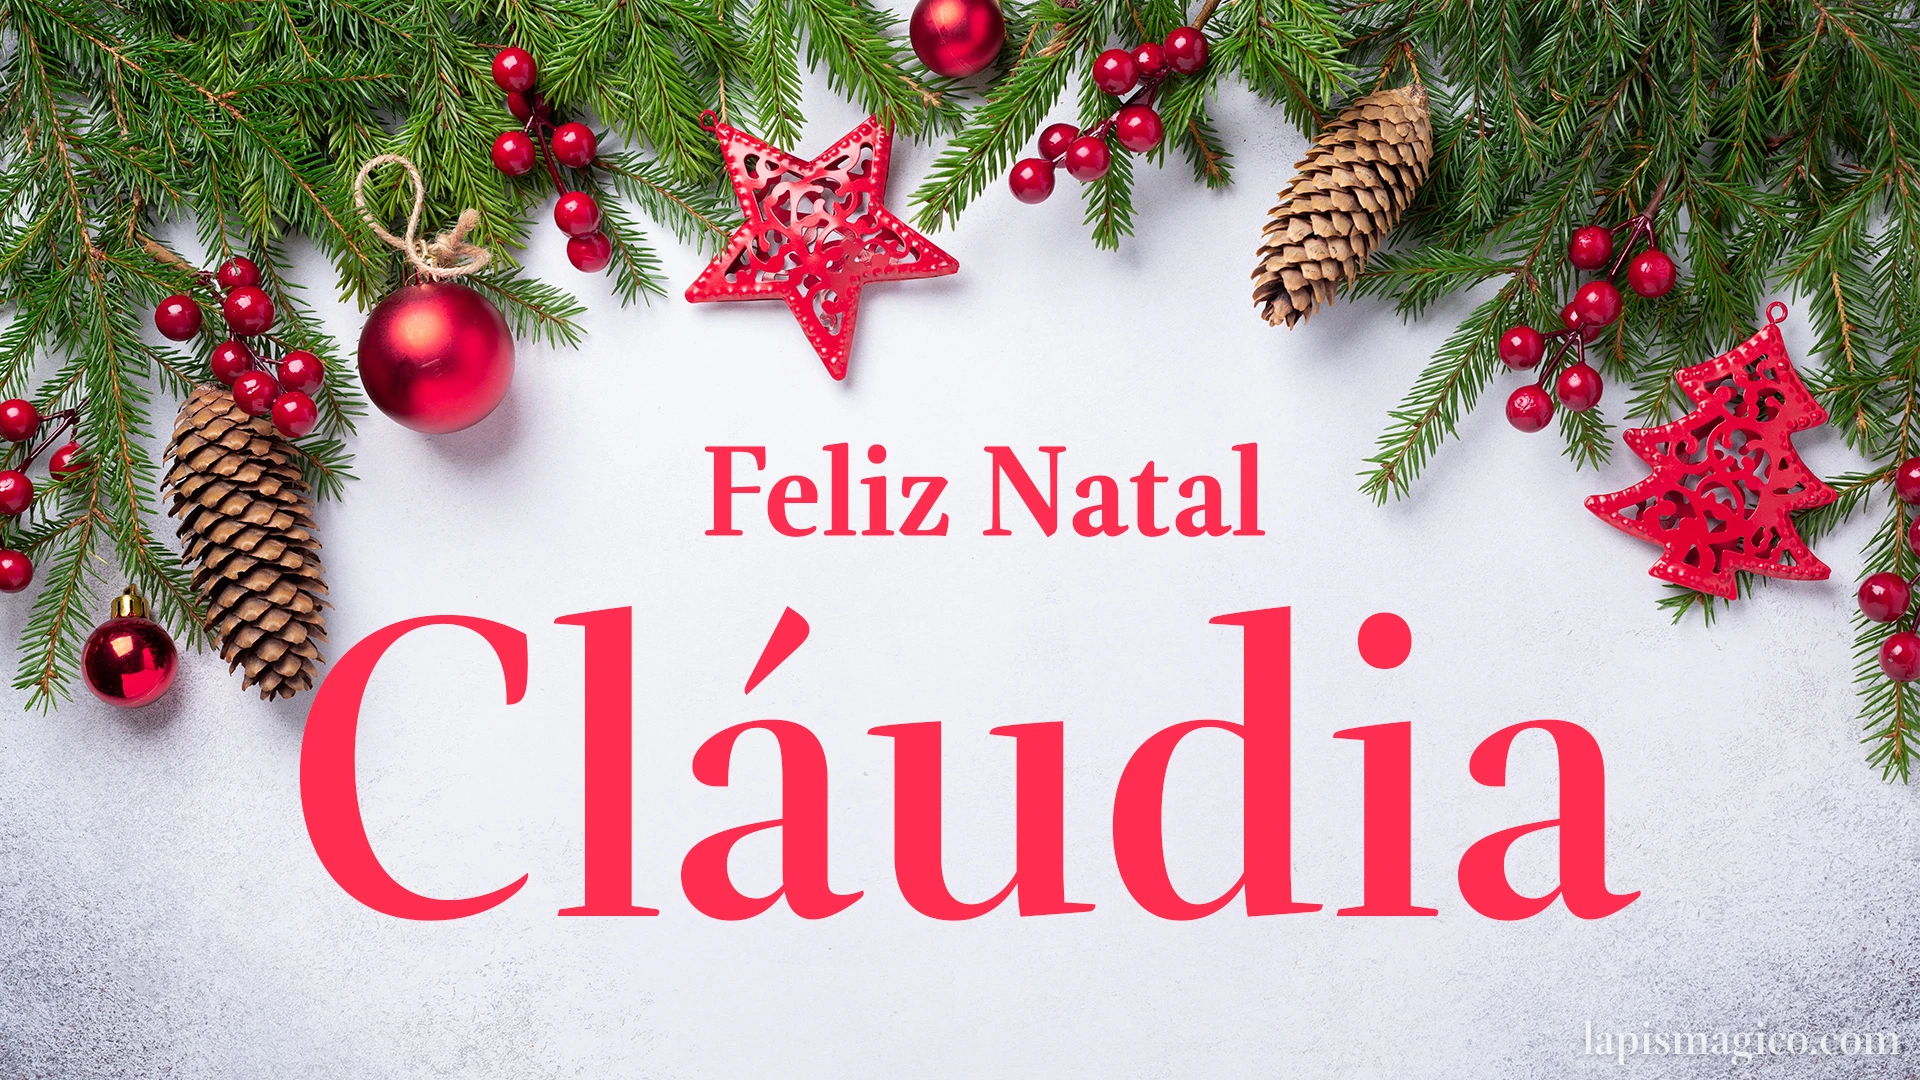 Oh Cláudia, cinco postais de Feliz Natal Postal com o teu nome